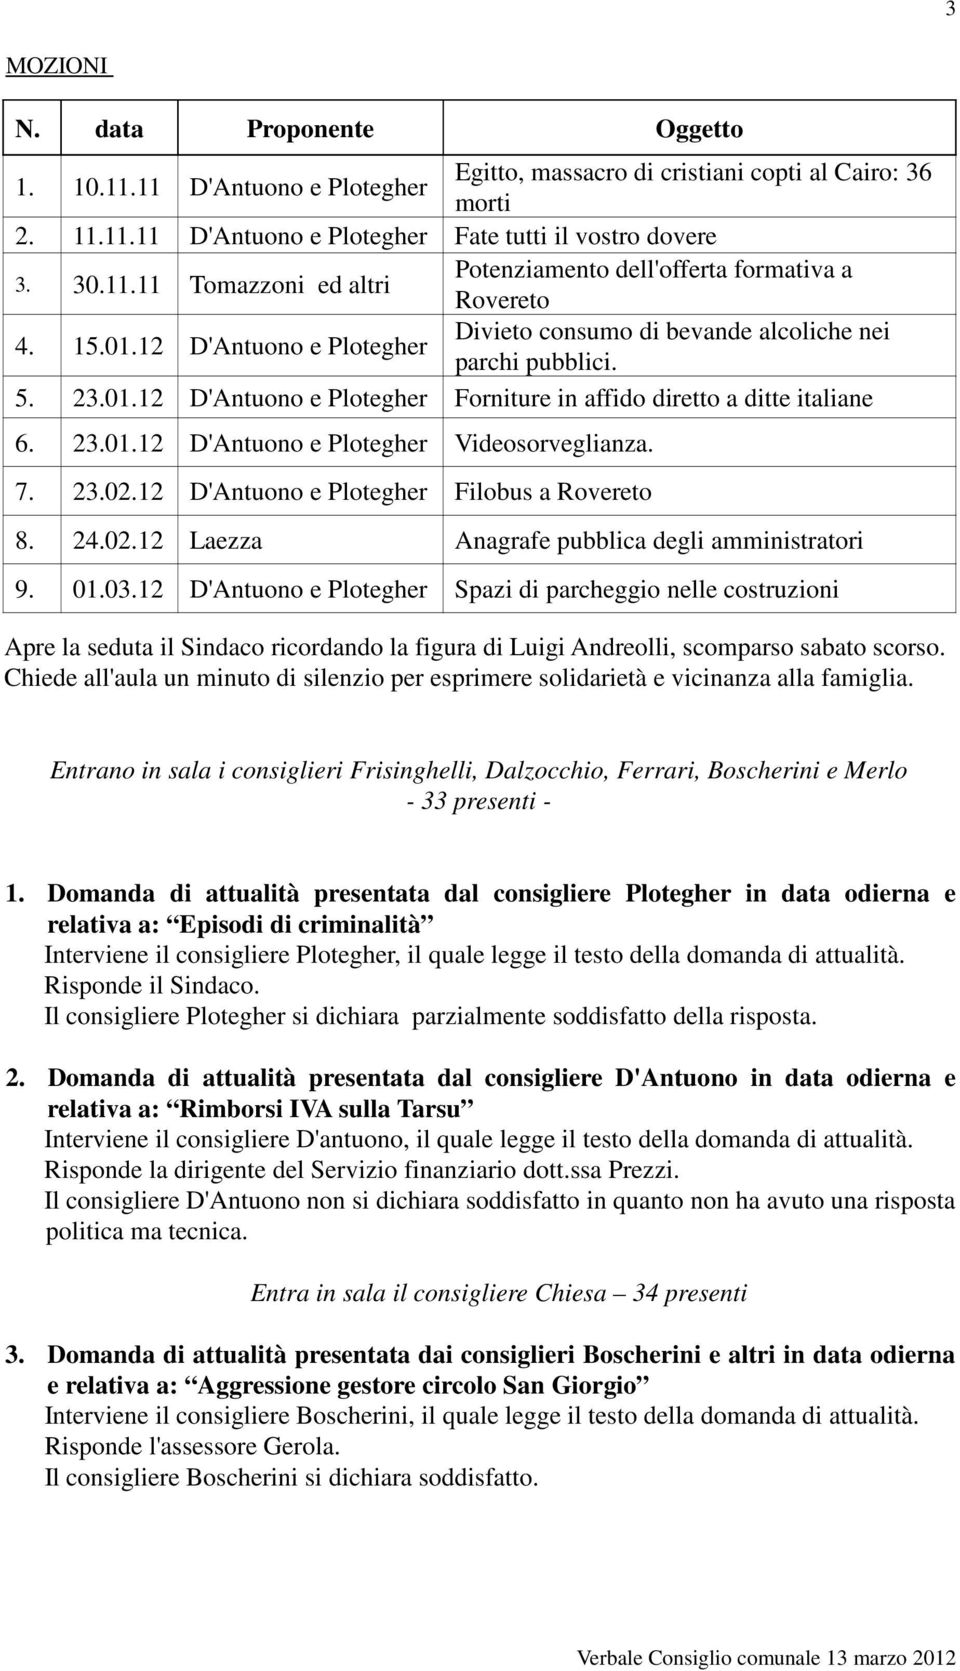 7. 23.02.12 D'Antuono e Plotegher Filobus a Rovereto 8. 24.02.12 Laezza Anagrafe pubblica degli amministratori 9. 01.03.